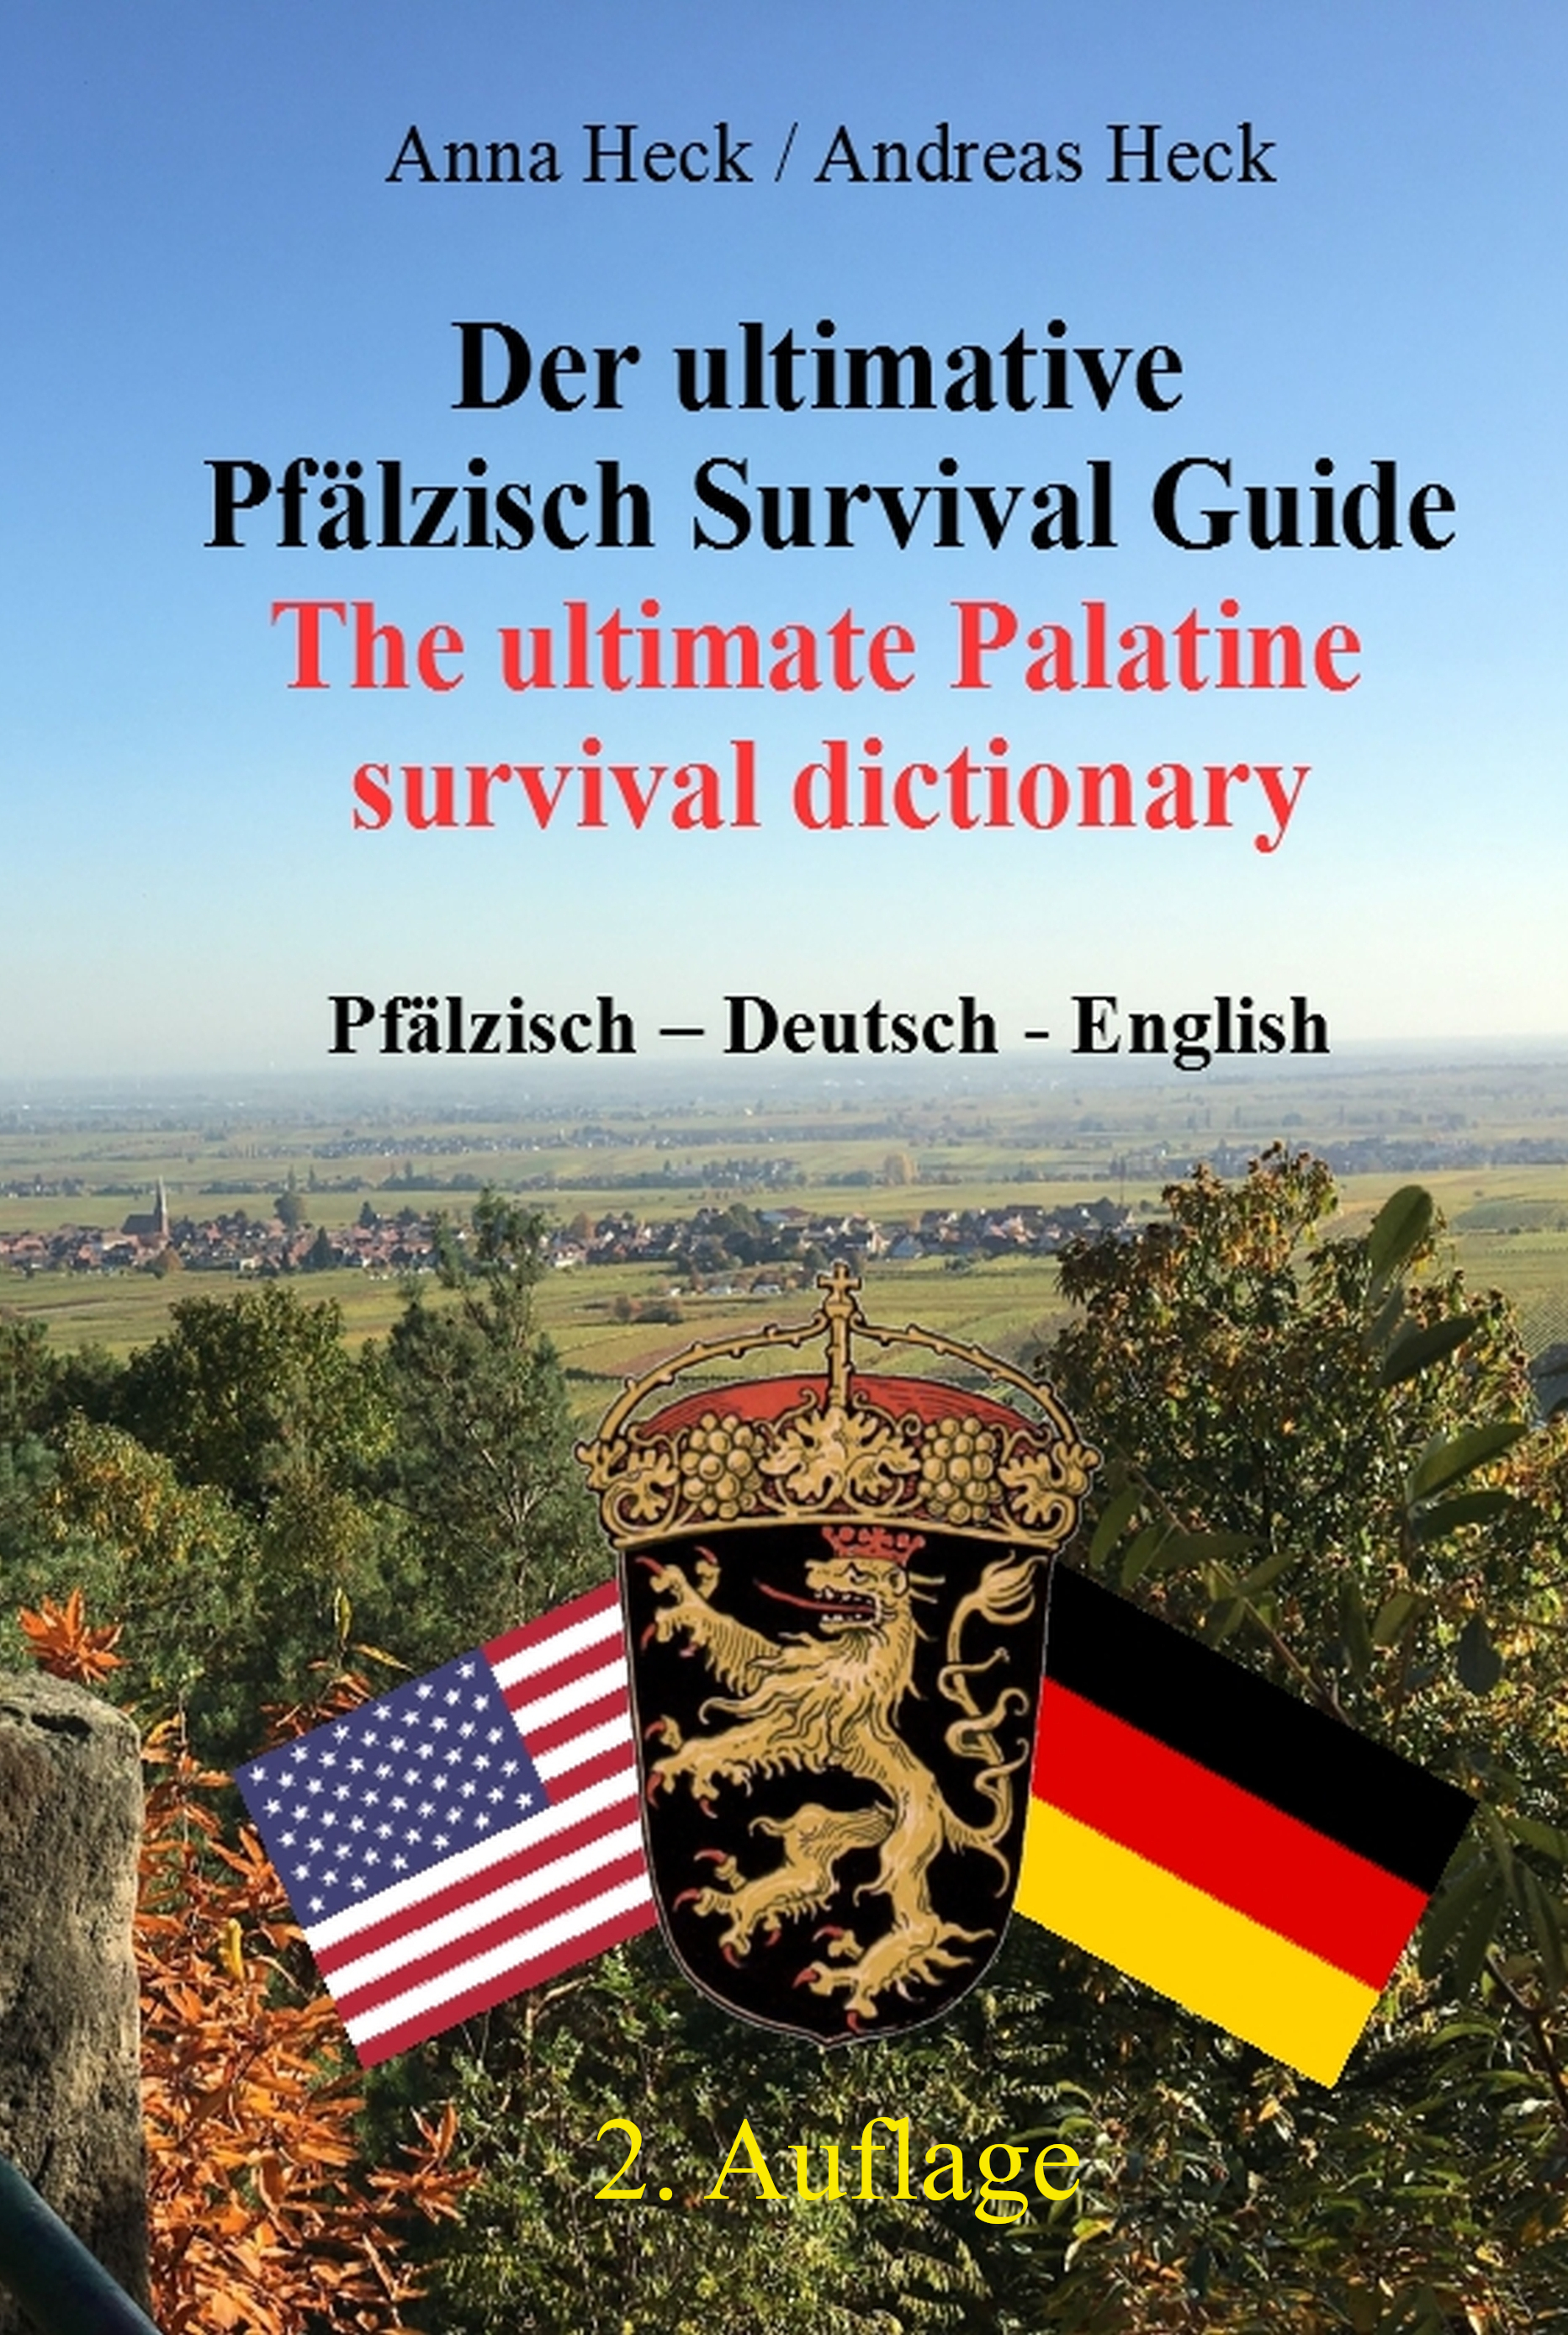 Ausschnitt des Covers von "Der ultimative Pfälzisch Survival Guide" mit internem Link zu "Kleine Lesevergügen"